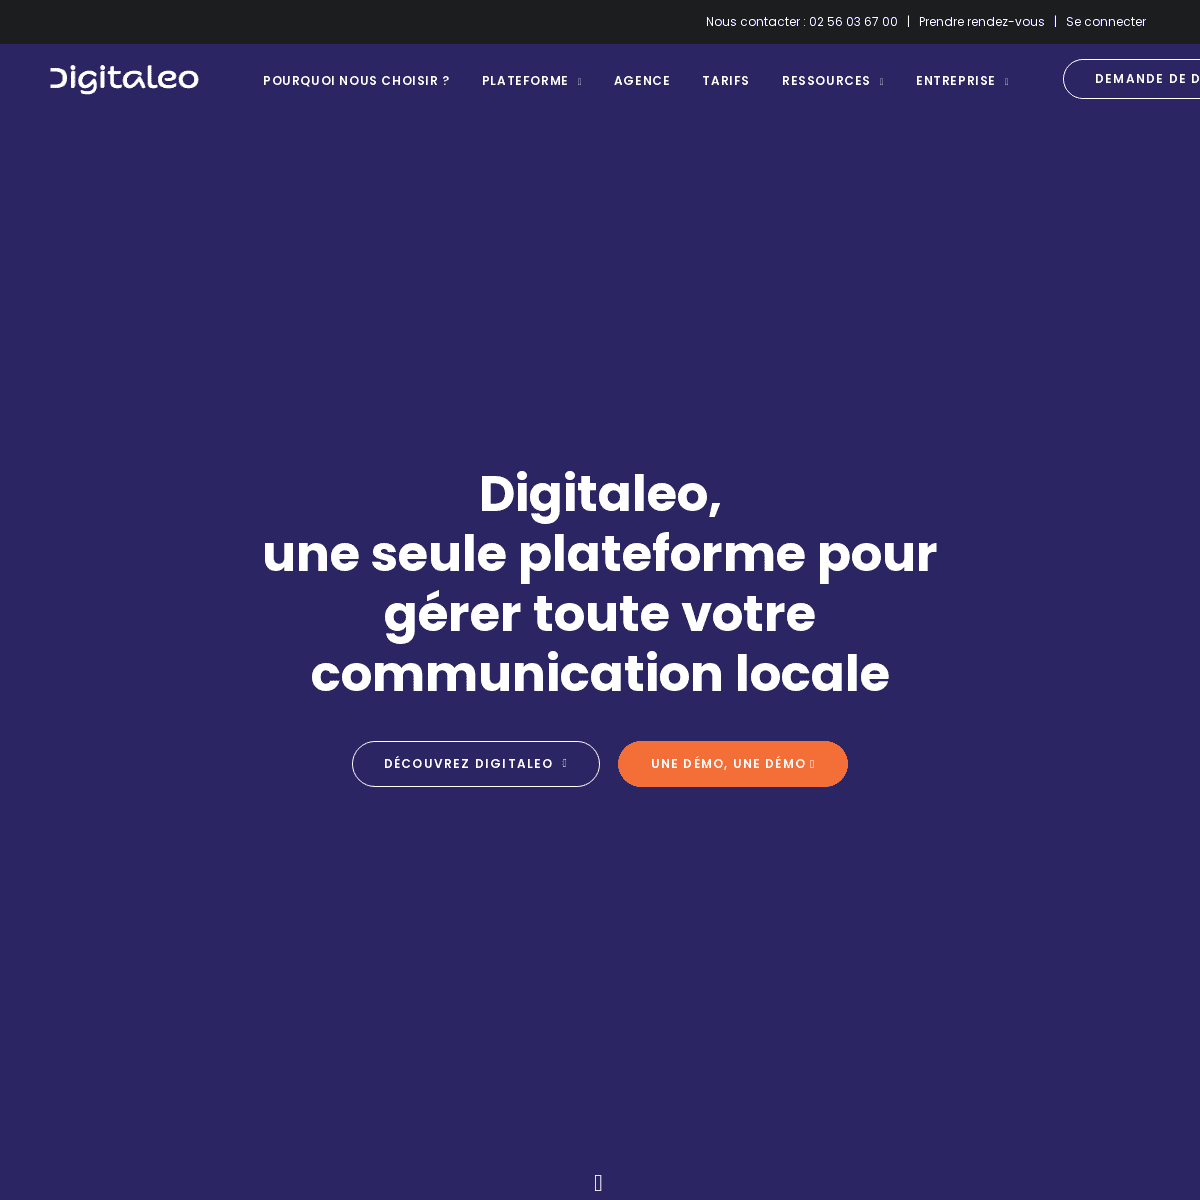 A complete backup of https://digitaleo.fr